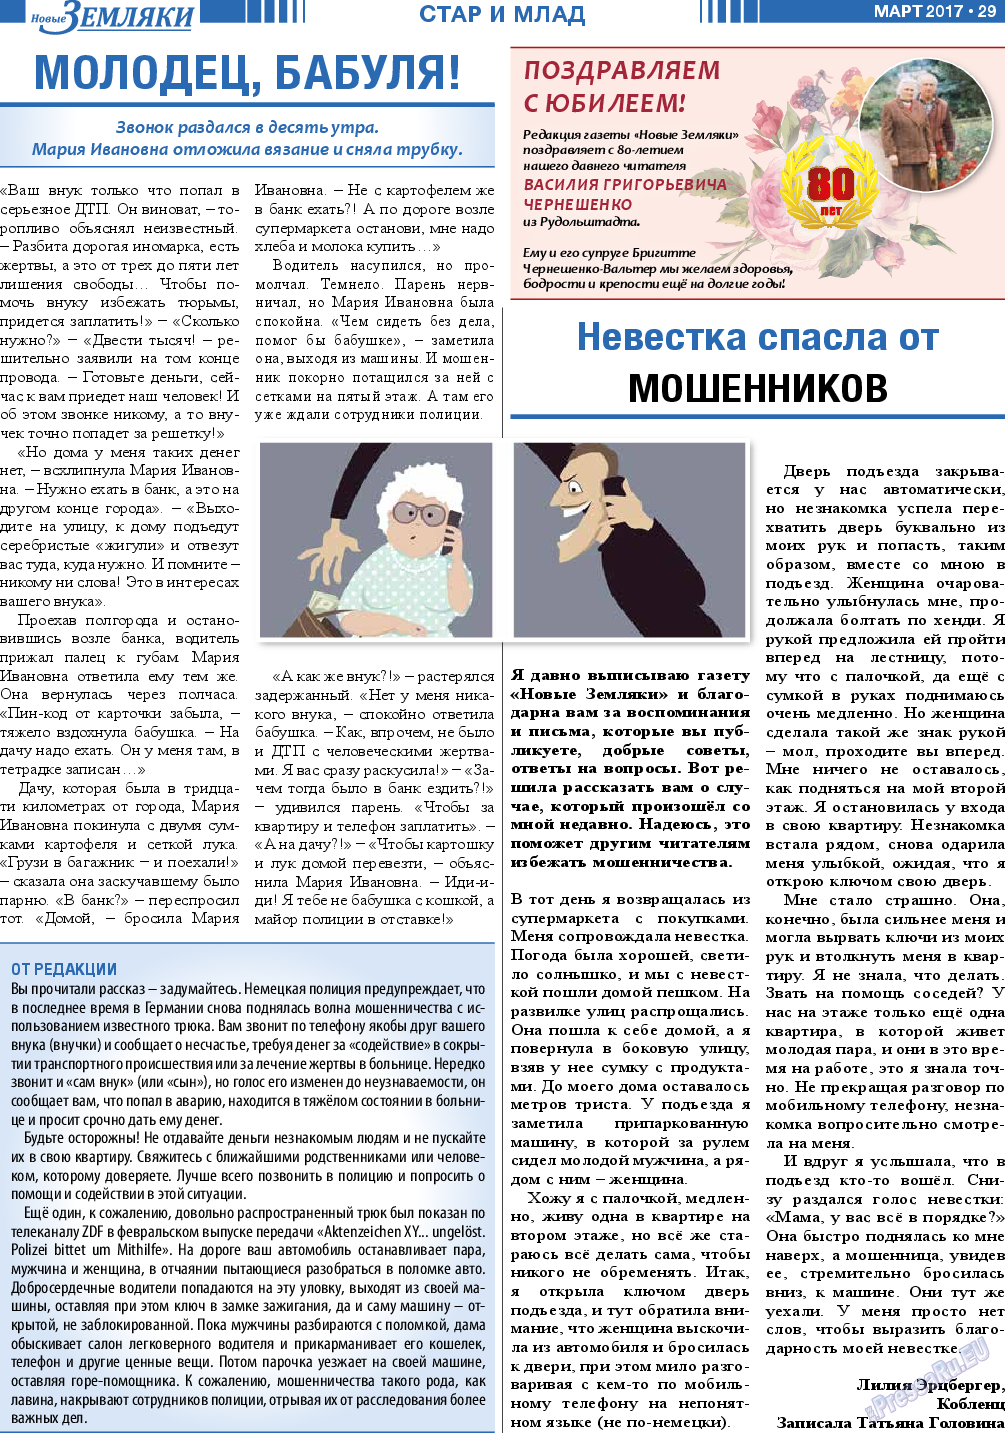 Новые Земляки, газета. 2017 №3 стр.29